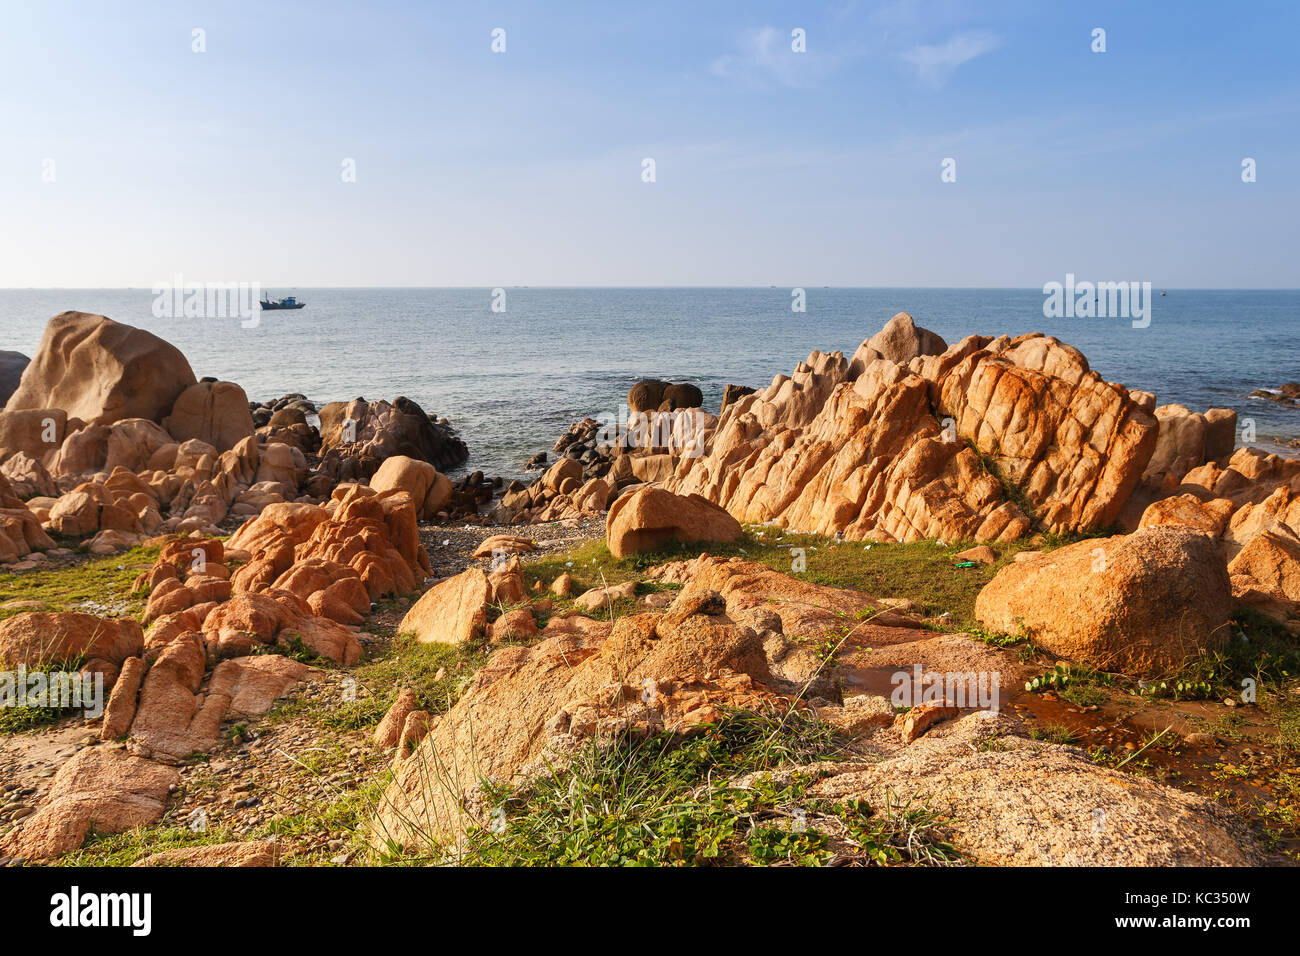 Co thach Strand, Binh Thuan, ist ein neues Ziel für Fotografen in Vietnam. Es ist berühmt für seine tausend Jahre - Steine in grüne Algen bedeckt Stockfoto